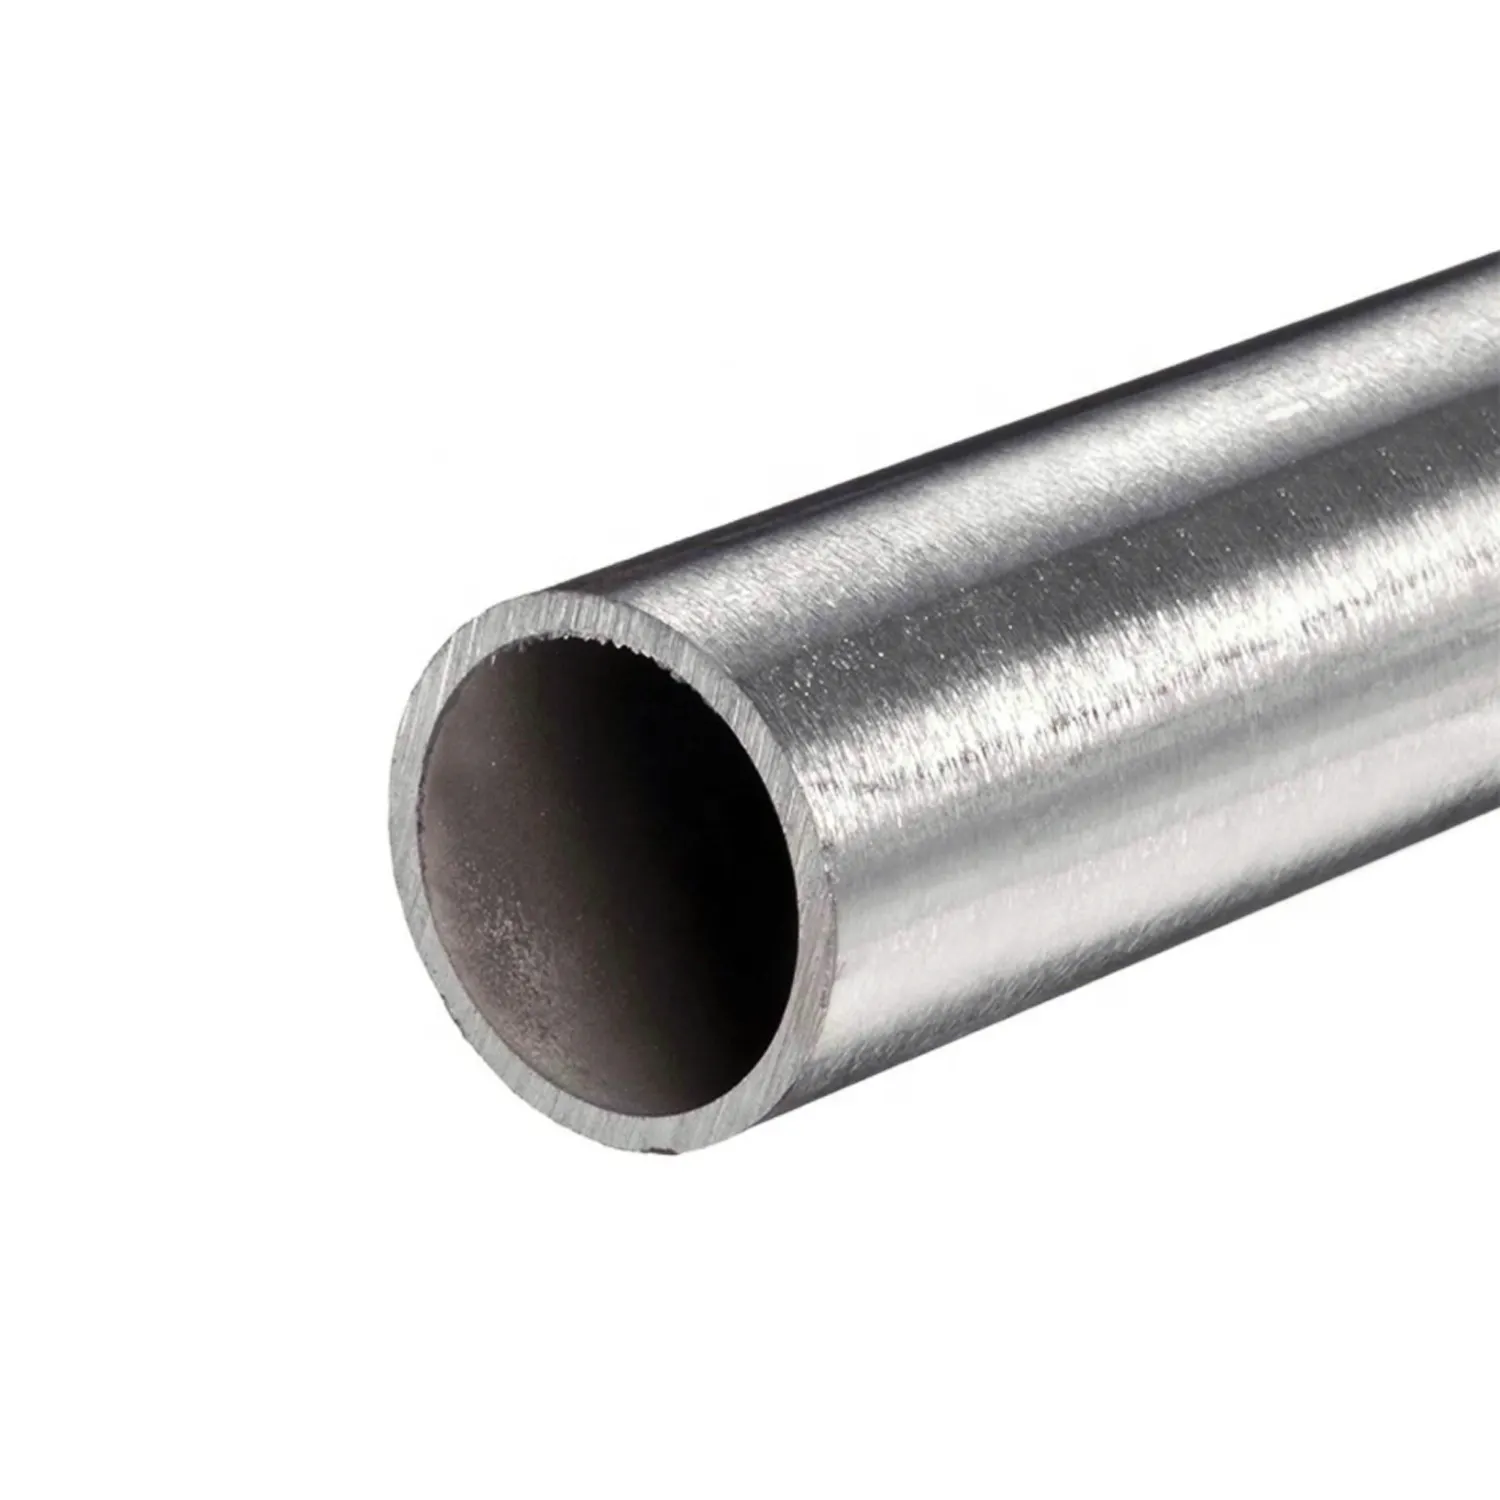 ASTM A53 A106 1045 yuvarlak sıcak haddelenmiş çelik boru kaynaklı veya dikişsiz hafif karbon çelik boru API 5L Sch40 petrol ve gaz boru hattı